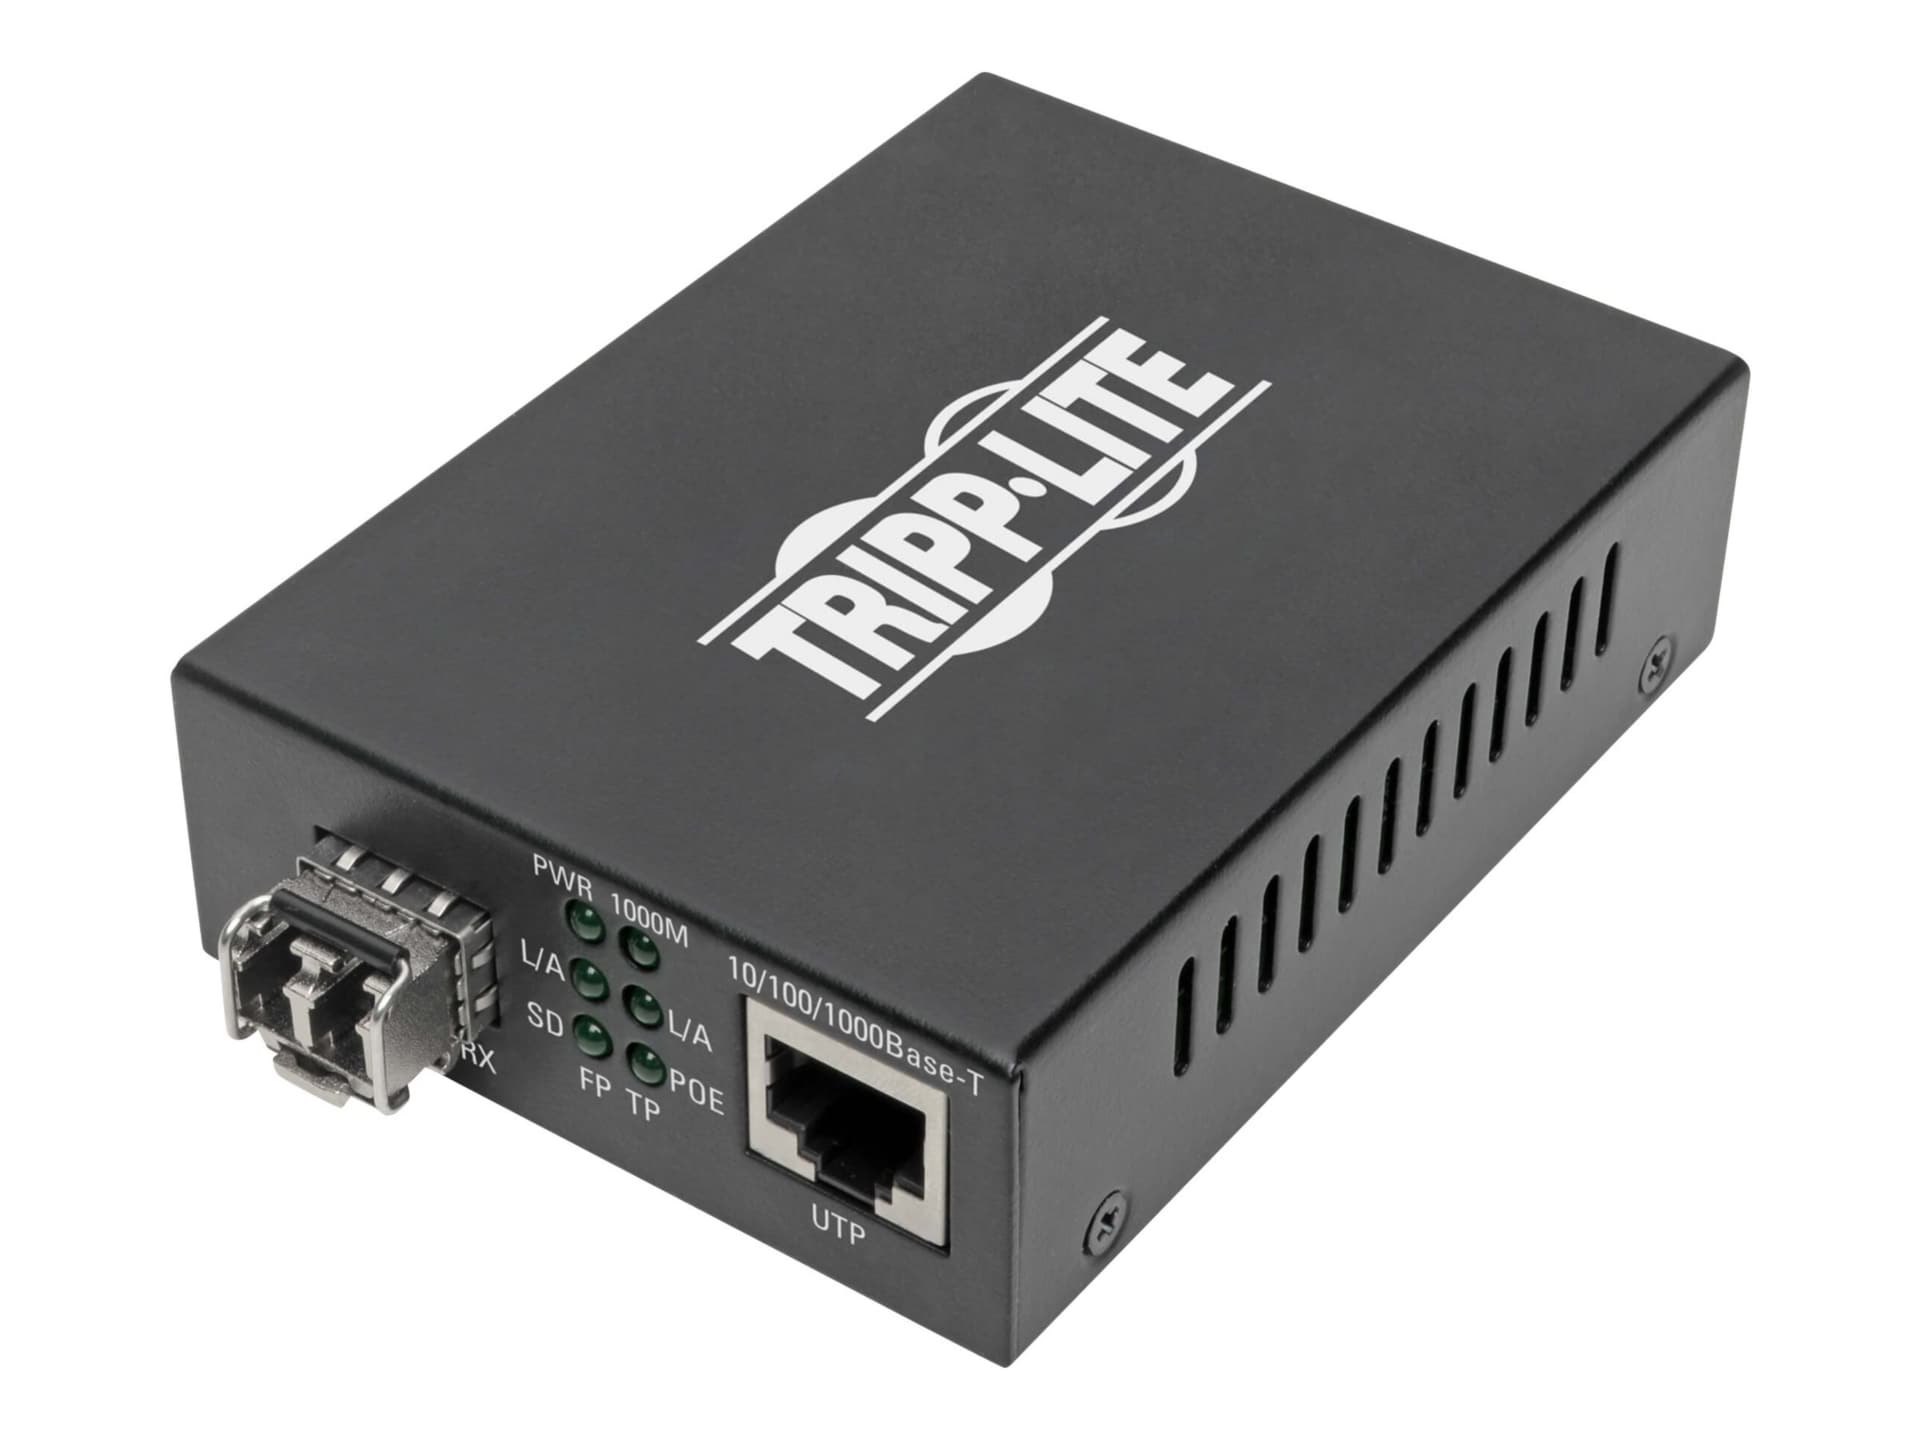 Tripp Lite Gigabit Multimode Fiber to Ethernet Media Converter, POE+ - 10/100/1000 LC, 850 nm, 550 m (1804 ft.) - fiber